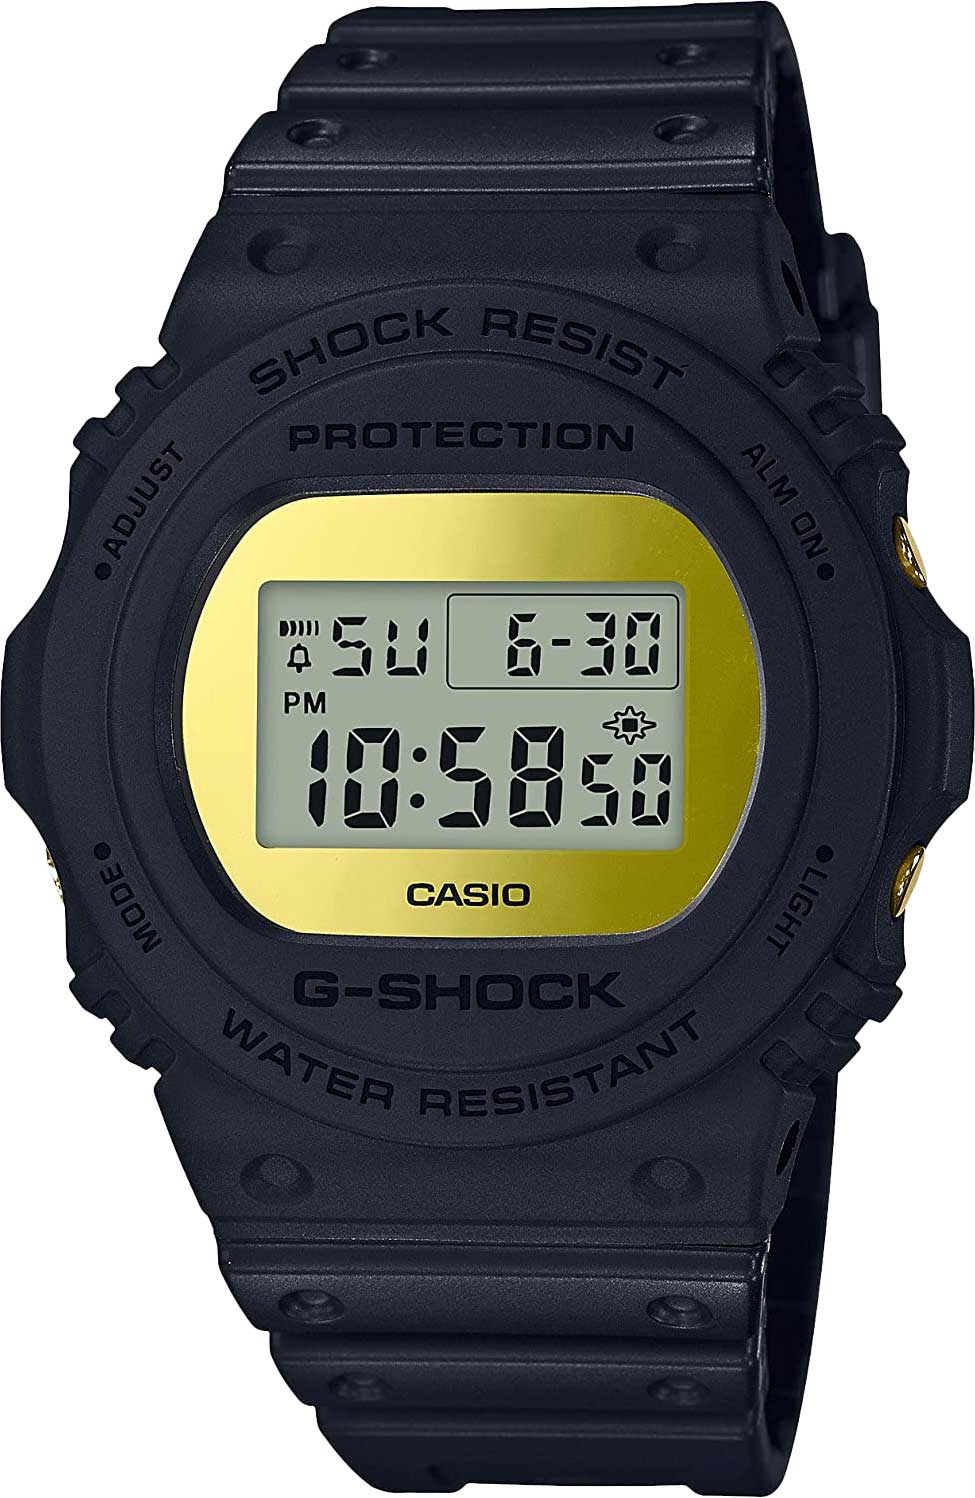    Casio G-SHOCK DW-5700BBMB-1  